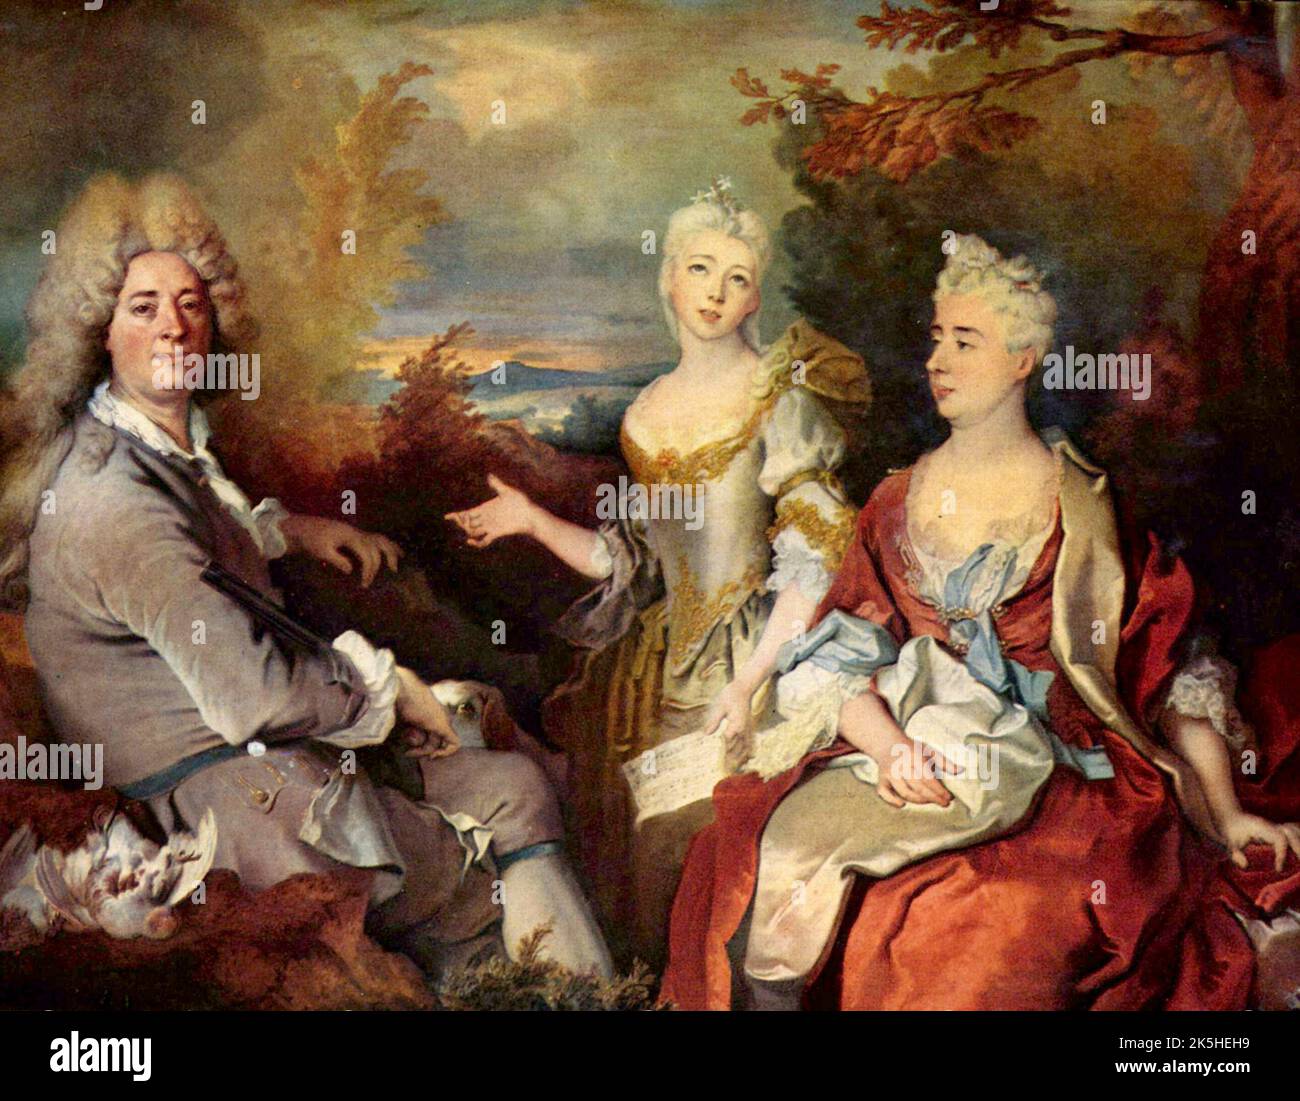 Self-portrait with family, Painting by Nicolas de Largillière Stock Photo